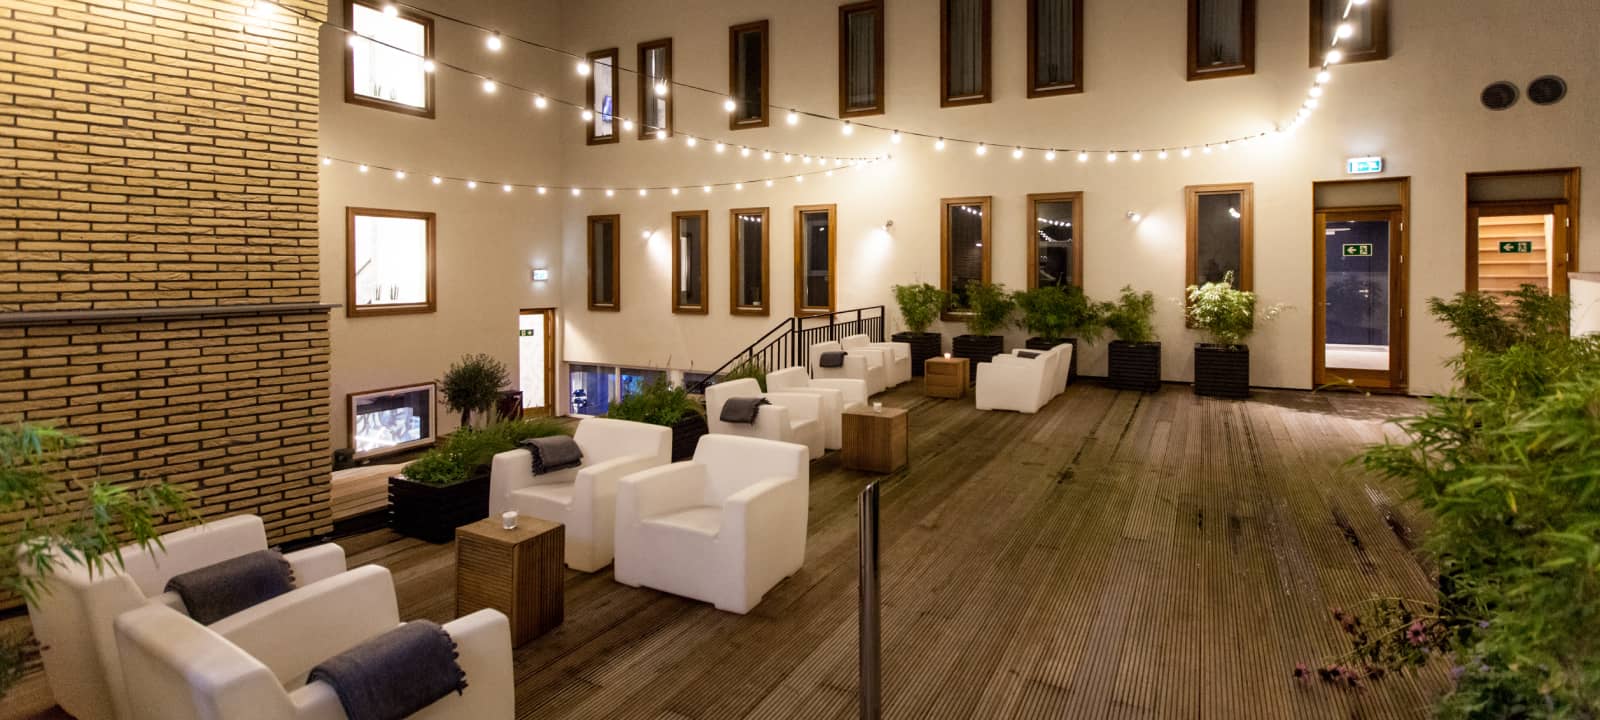 Interne patio van gebouw met houten terras, witte banken en planten decoratie | Kaboom Hotel